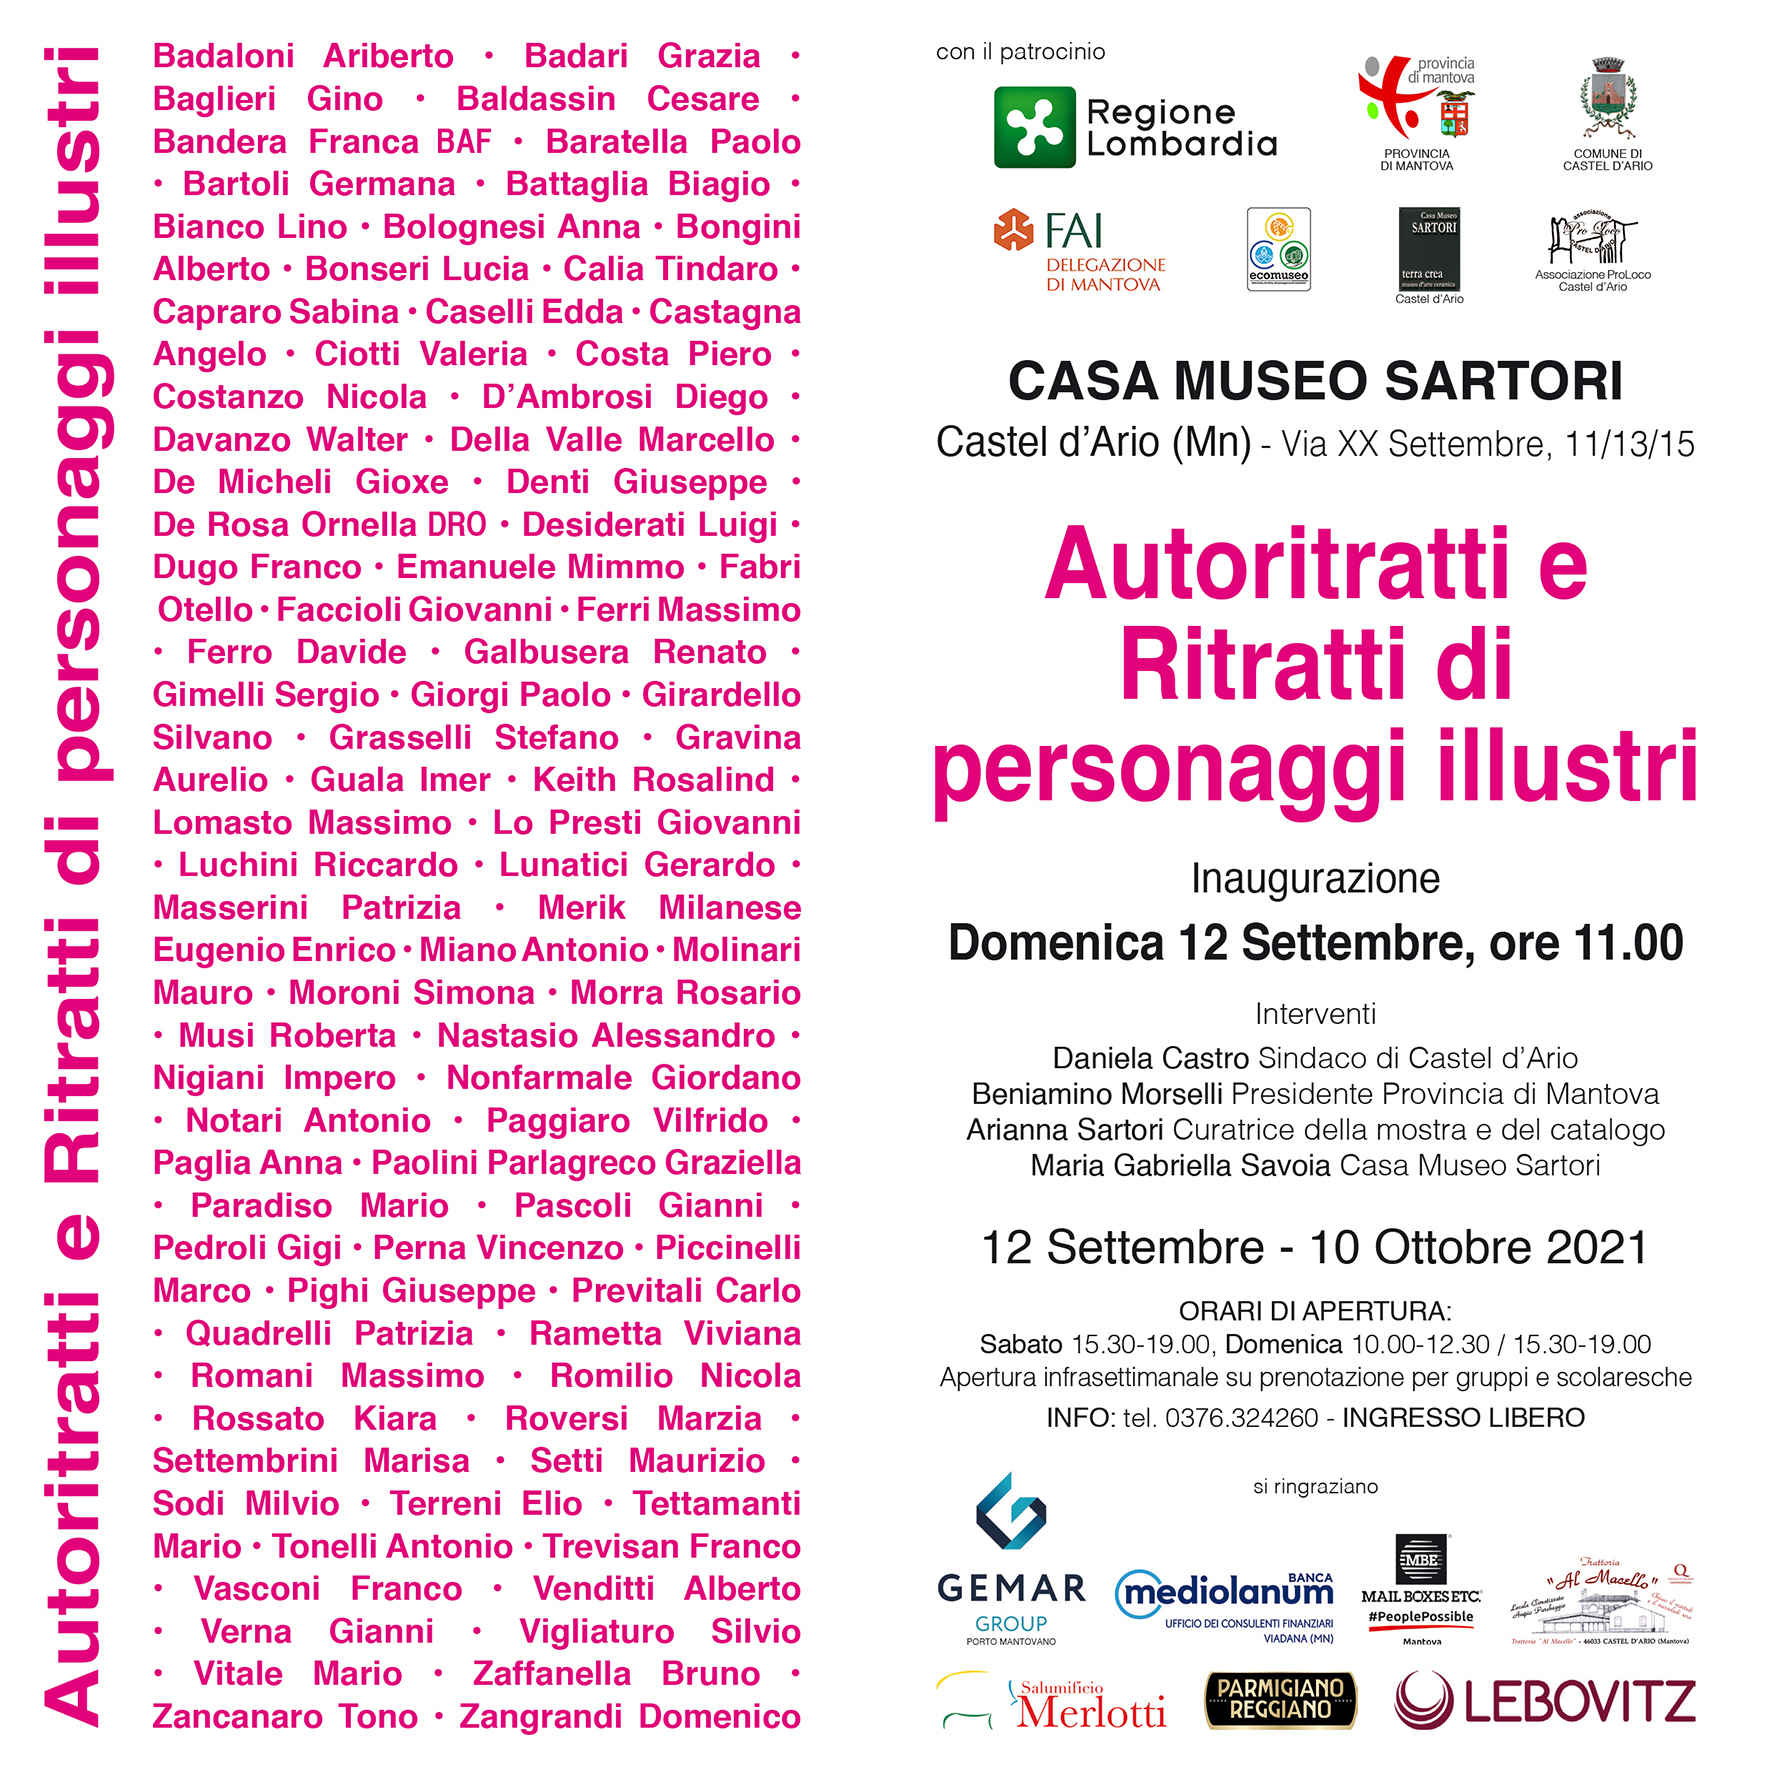 Ritratti di personaggi illustri alla Casa Museo Sartori, Castel d'Ario (MN), dal 12 settembre al 10 ottobre 2021